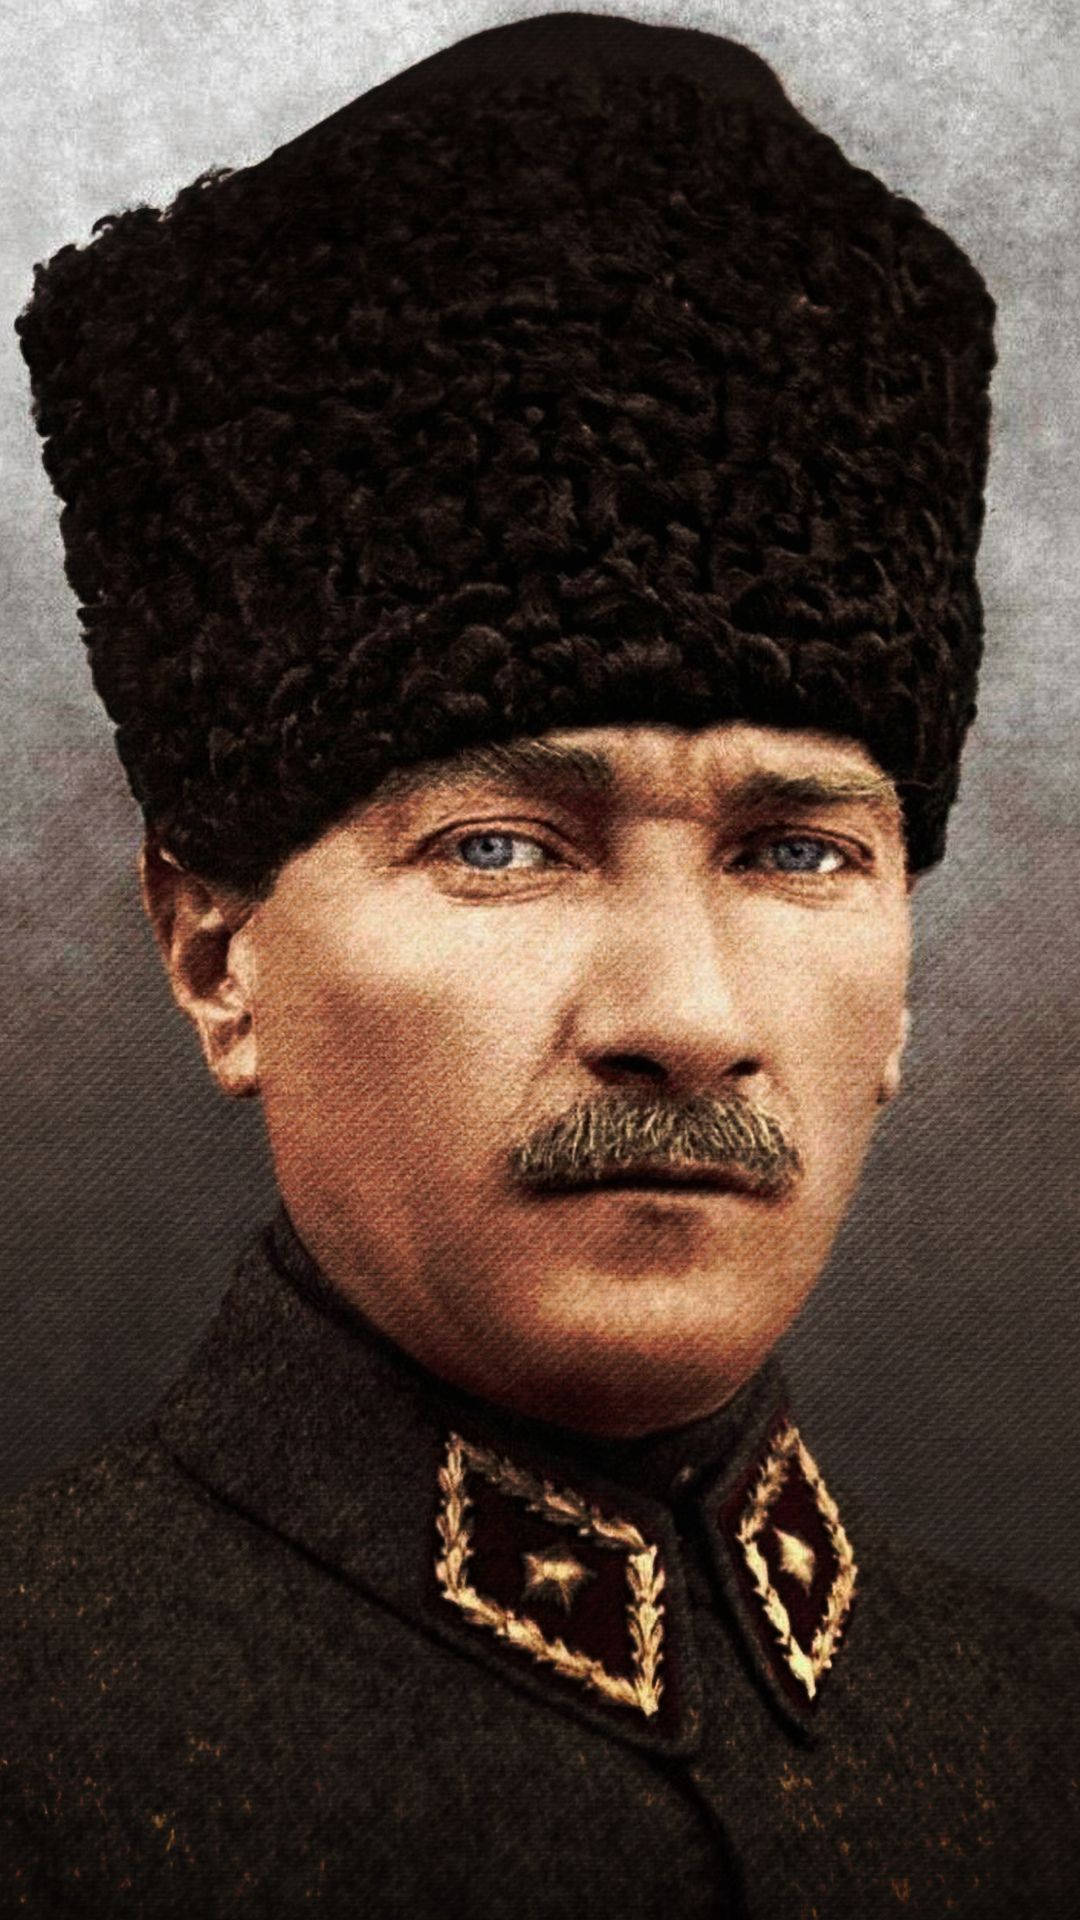 Fondode Pantalla De Ataturk Con Sombrero De Cordero Fondo de pantalla